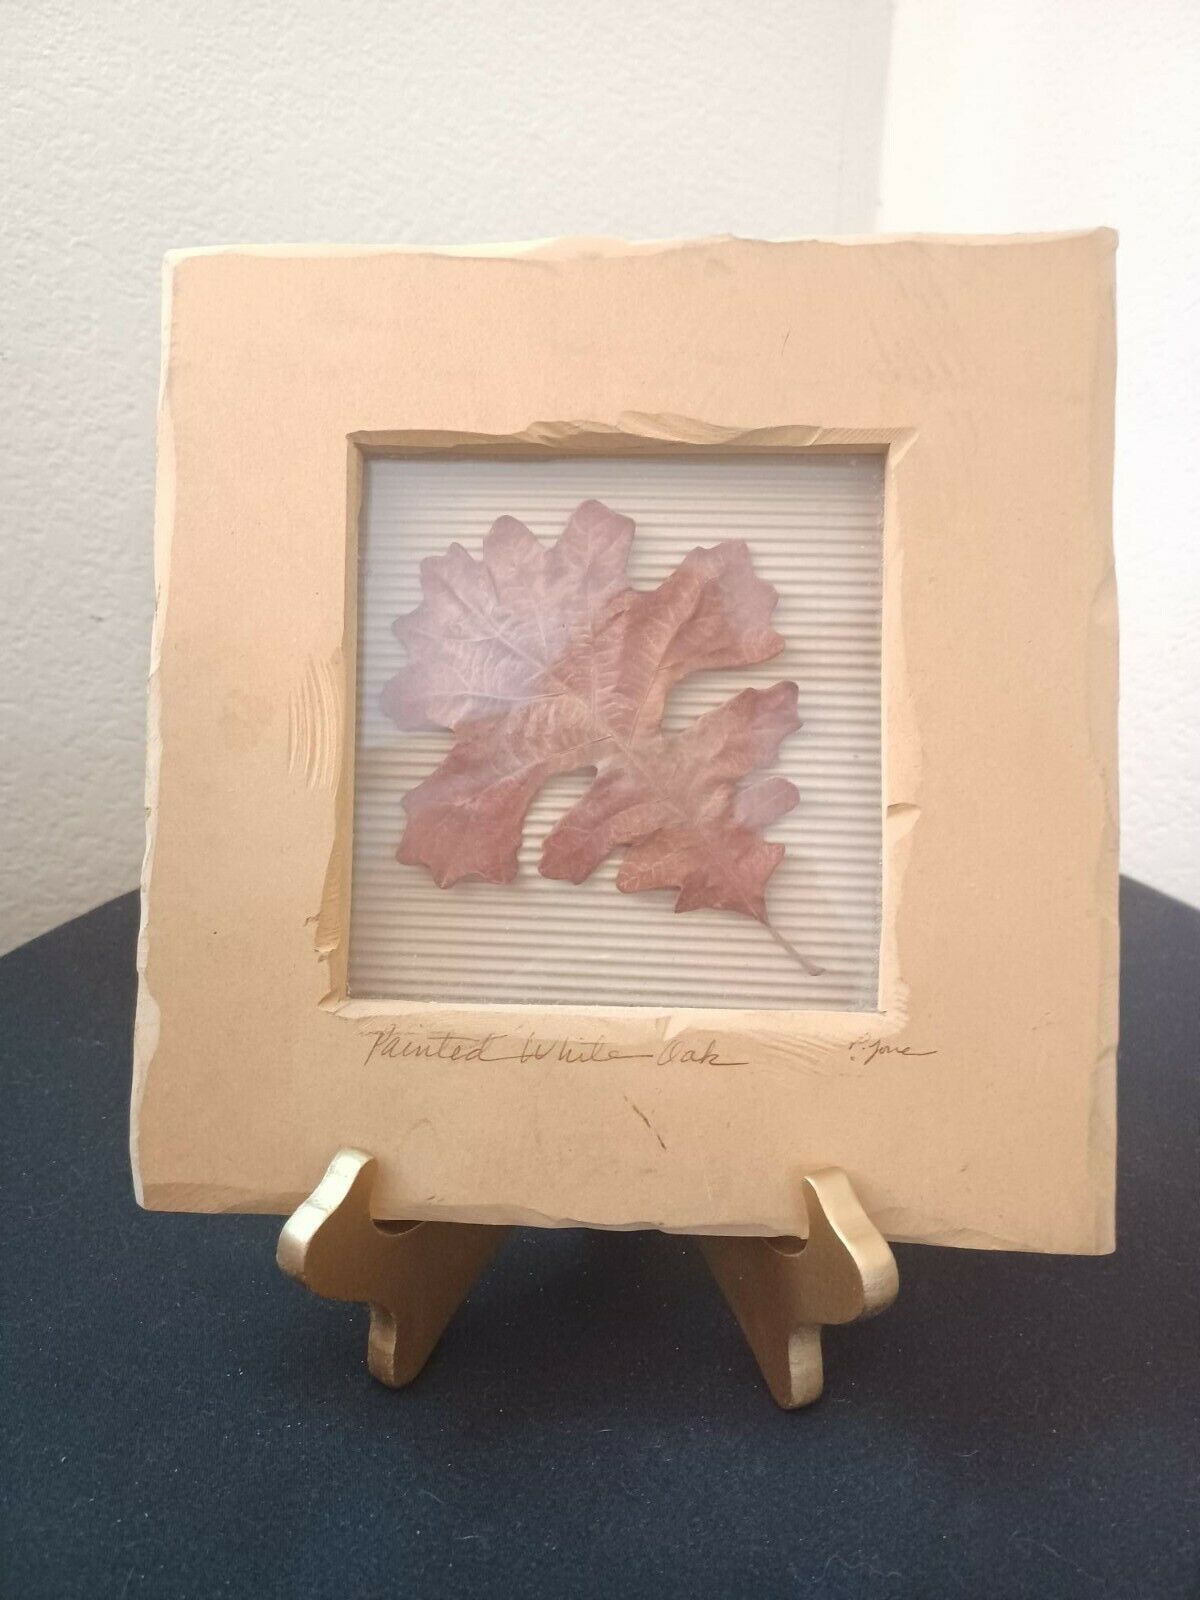 Framed Oak Leaf Pressed Botanical Art Work Signed By Artist